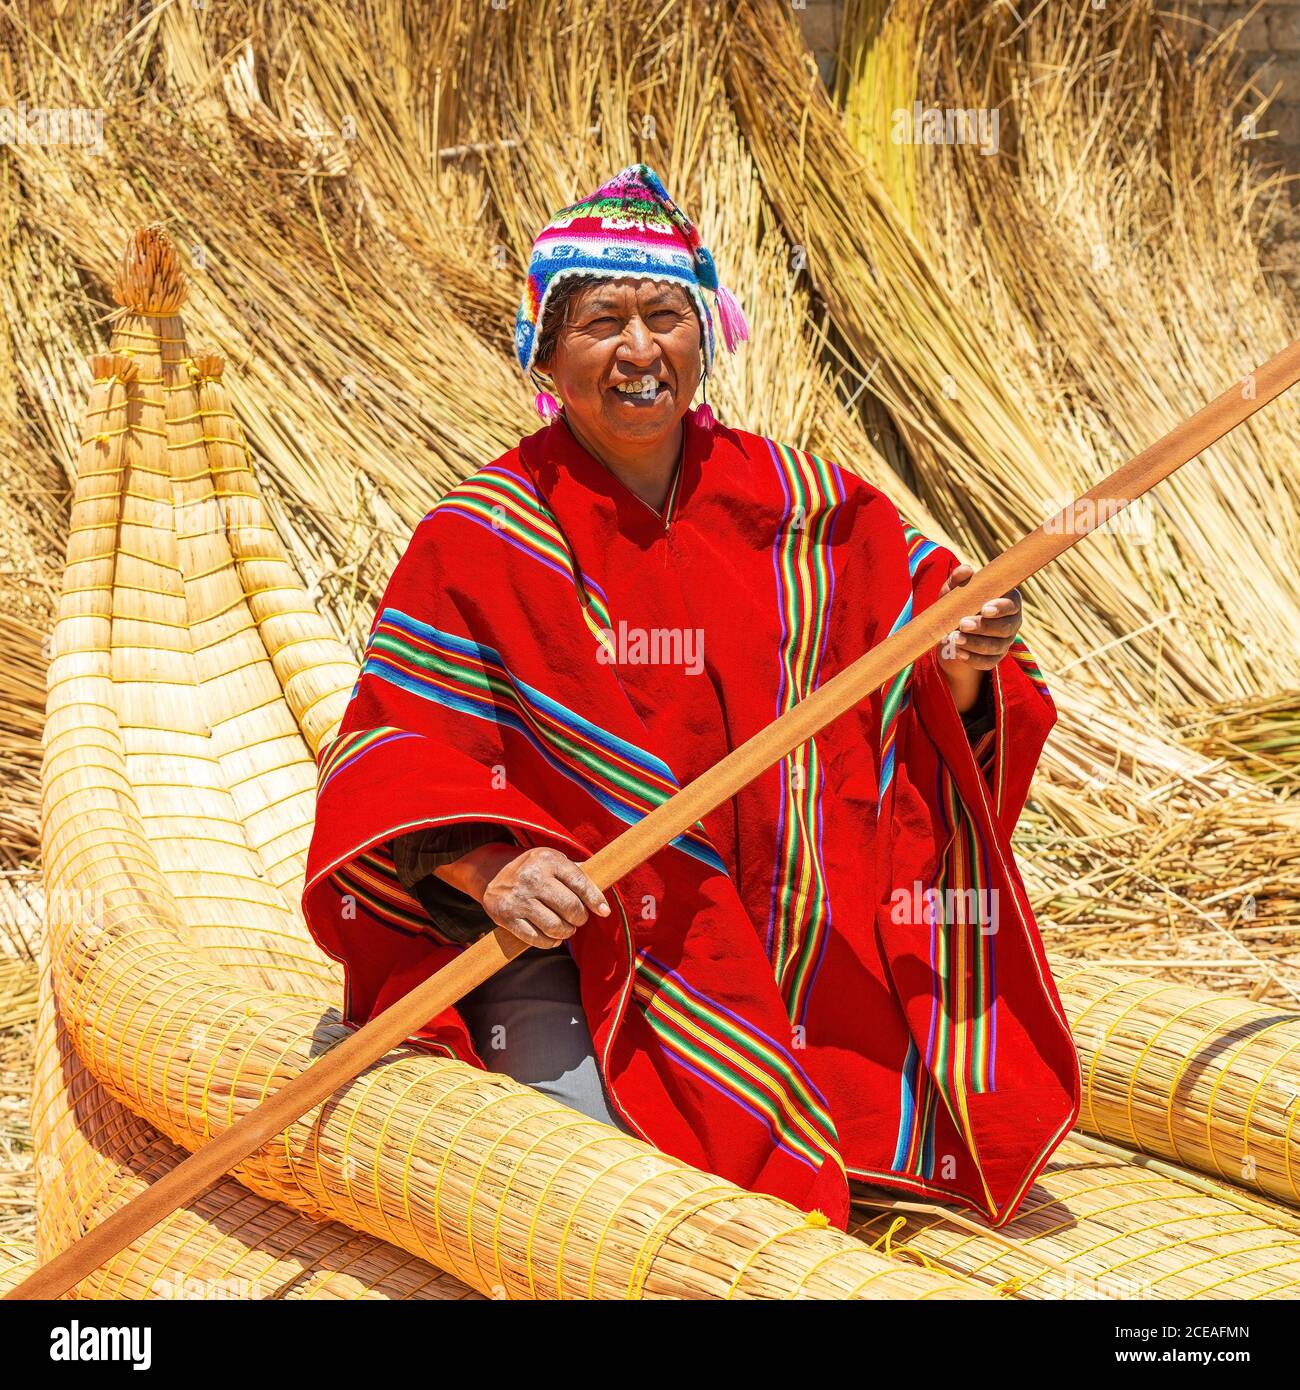 Bolivianischer Aymara indigener Mann mit traditioneller Kleidung in seinem traditionellen Totora-Schilfboot, Titicaca-See, Bolivien. Stockfoto